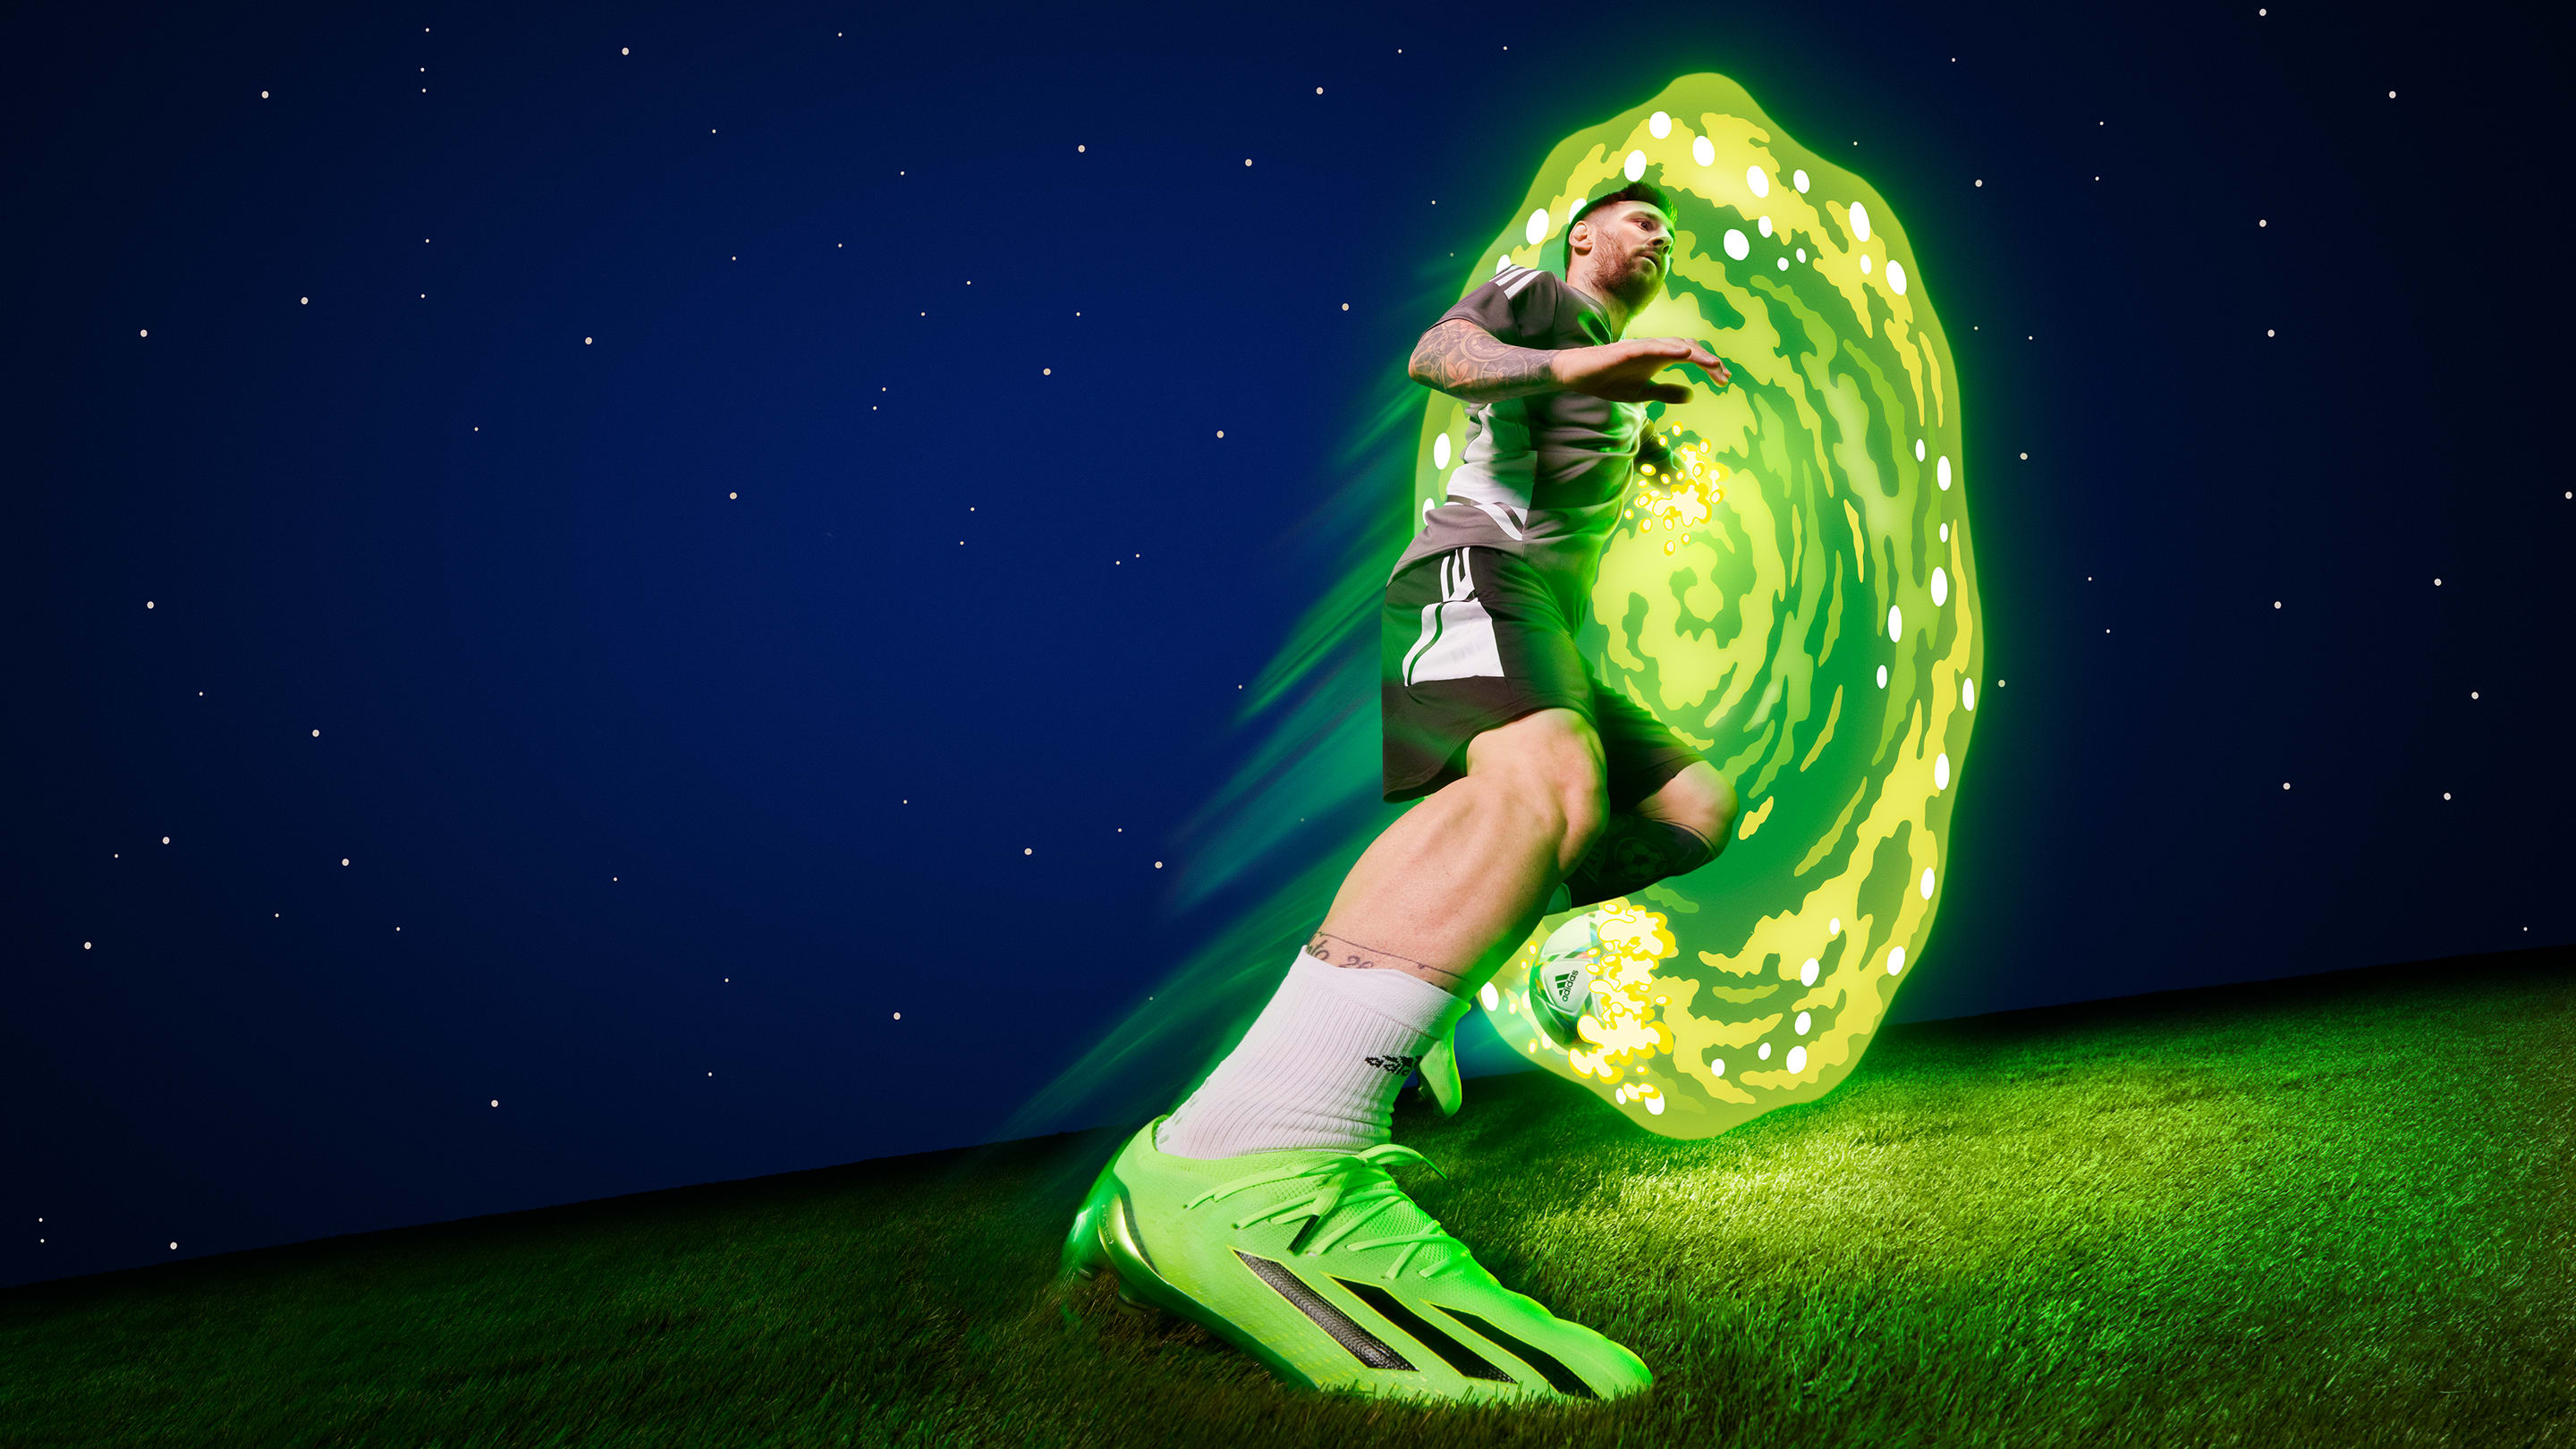 Bota de fútbol Speedportal.1 césped artificial - Verde adidas | adidas España